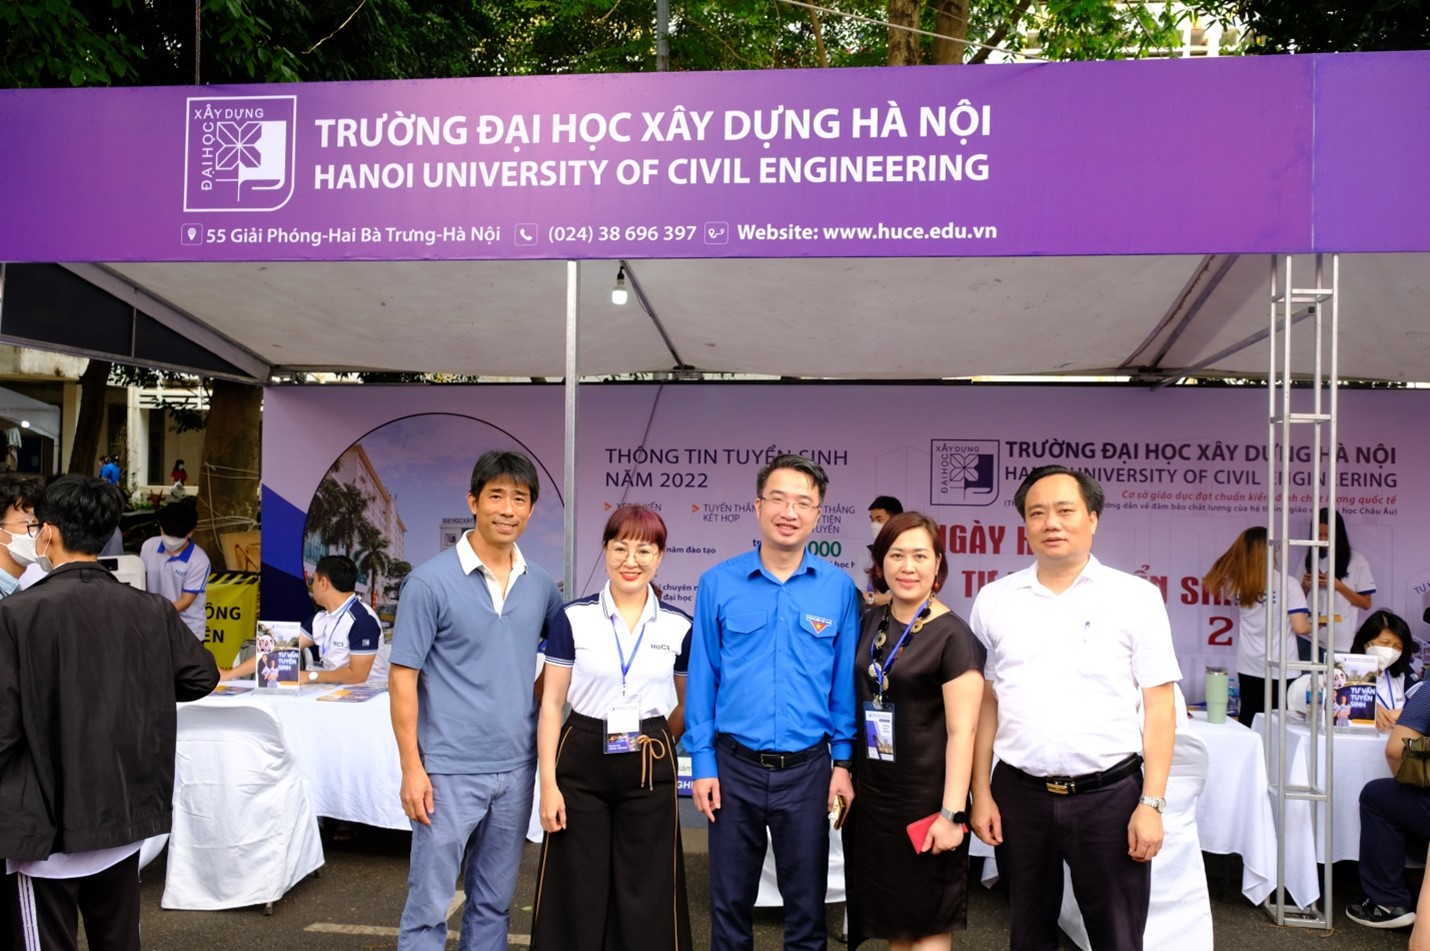 Trường Đại học Xây dựng Hà Nội tham gia Ngày hội Tư vấn Tuyển sinh – Hướng nghiệp năm 2022